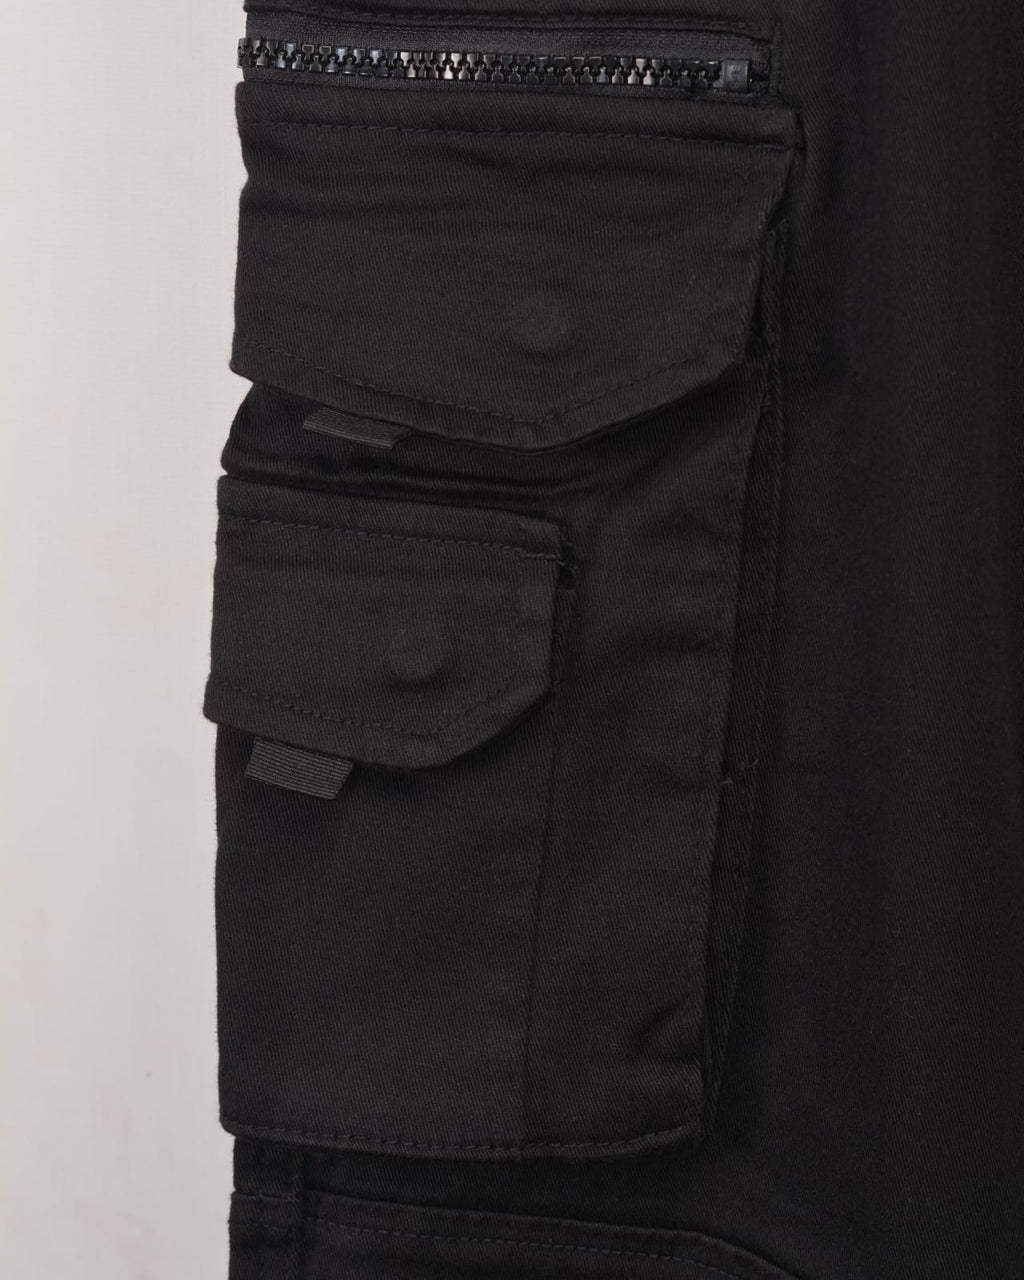 TerranovaCargo trousers in techno BLACK